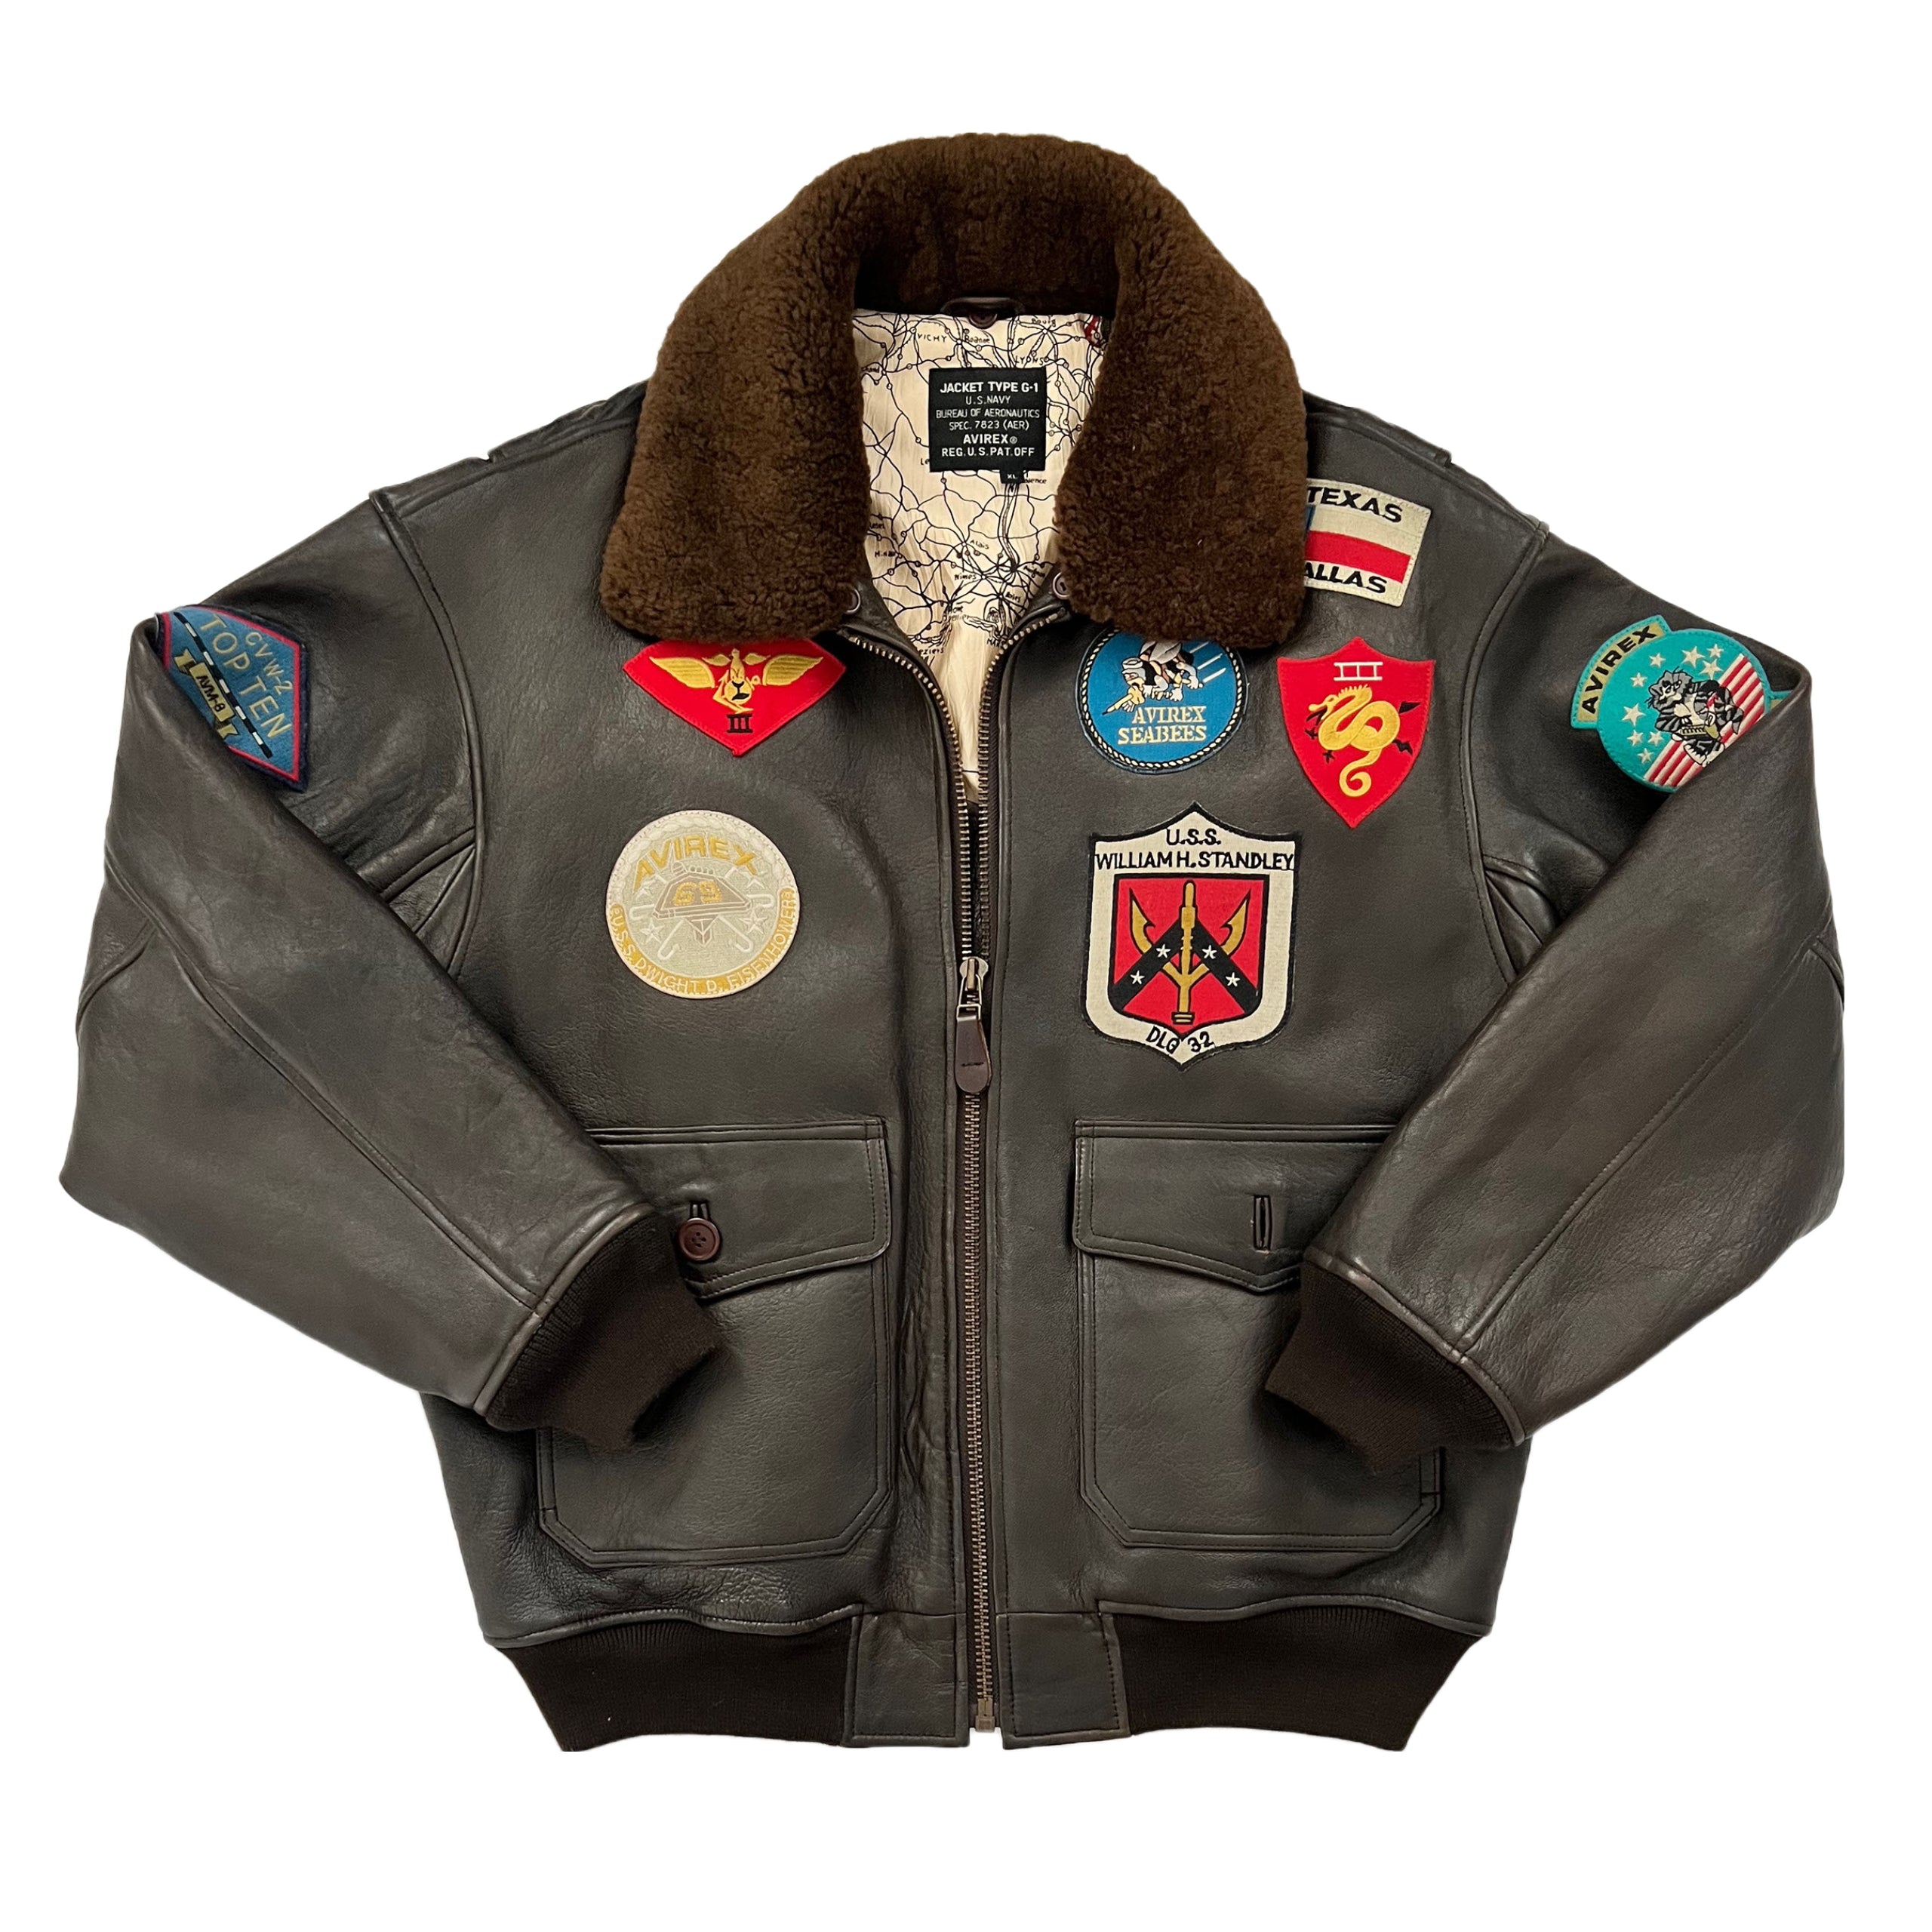 Vintage jackets for men and women. Vintage bomber jackets, vintage leather jackets for all to shop